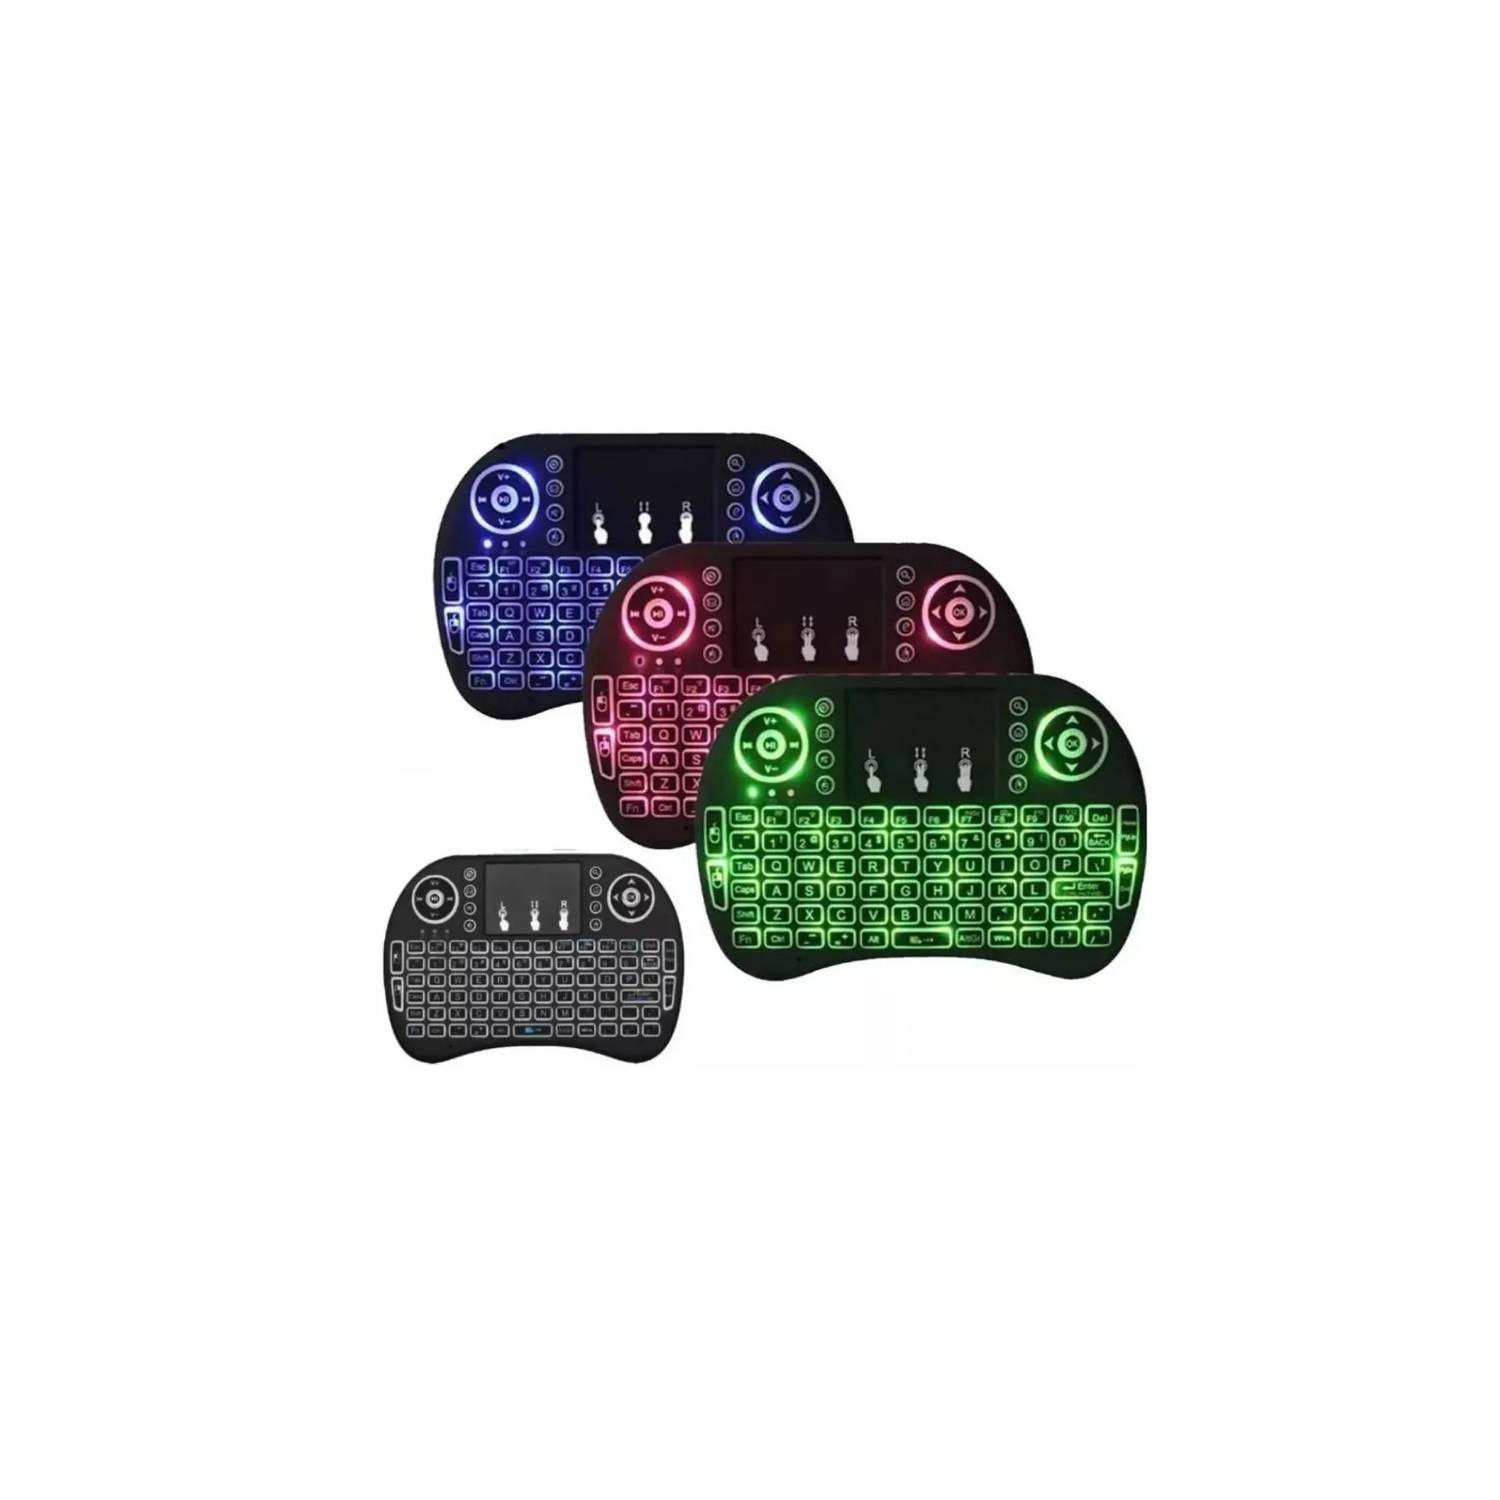 GENERICO Mini Teclado Inalámbrico Con Iluminación RGB Mouse Touchpad